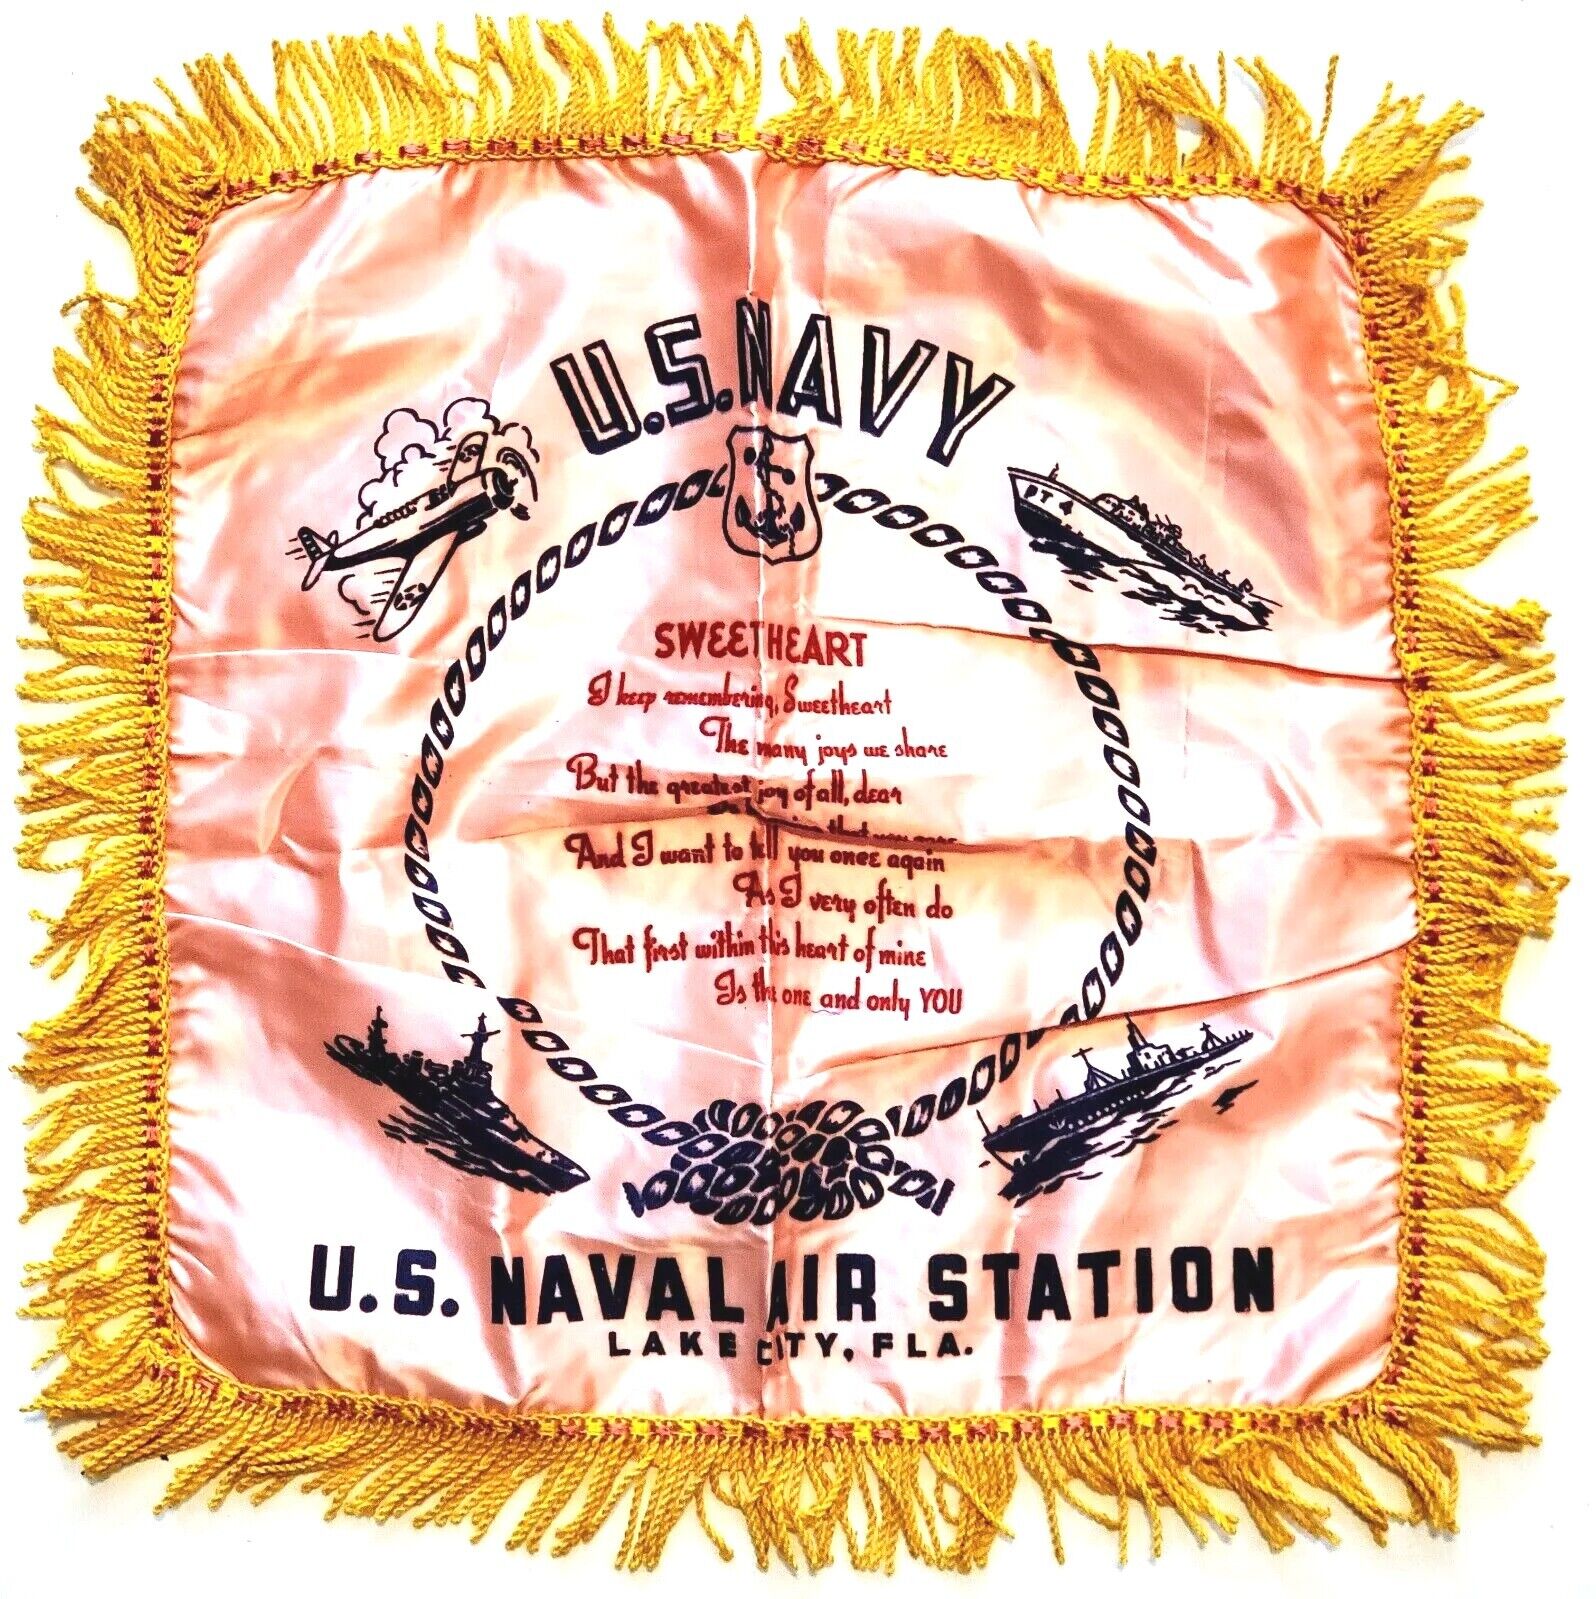 1940\'s US Navy World War II U.S. Naval Air Station Silk Sweetheart Pillow Case